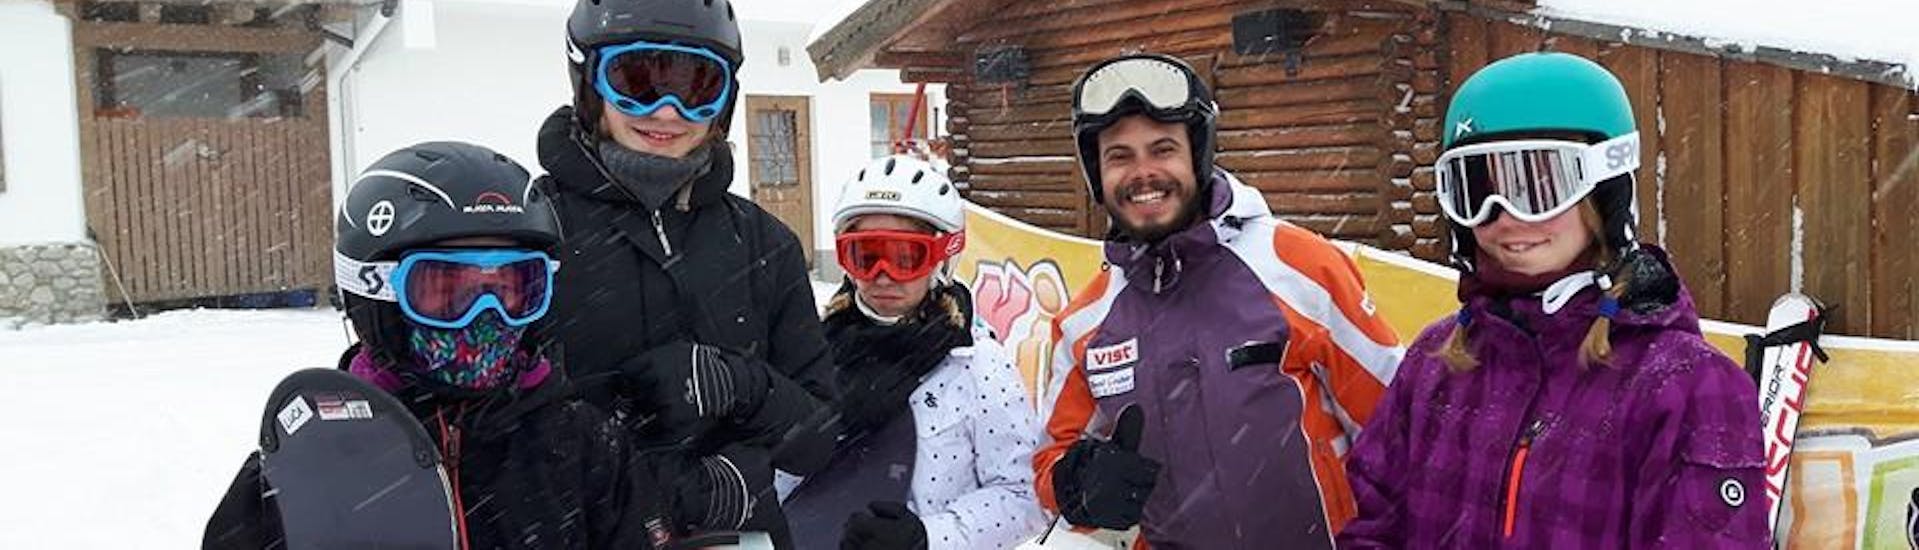 Cours de snowboard "All-in-One" pour Enfants (6-14 ans) avec Ecole de ski Toni Gruber.